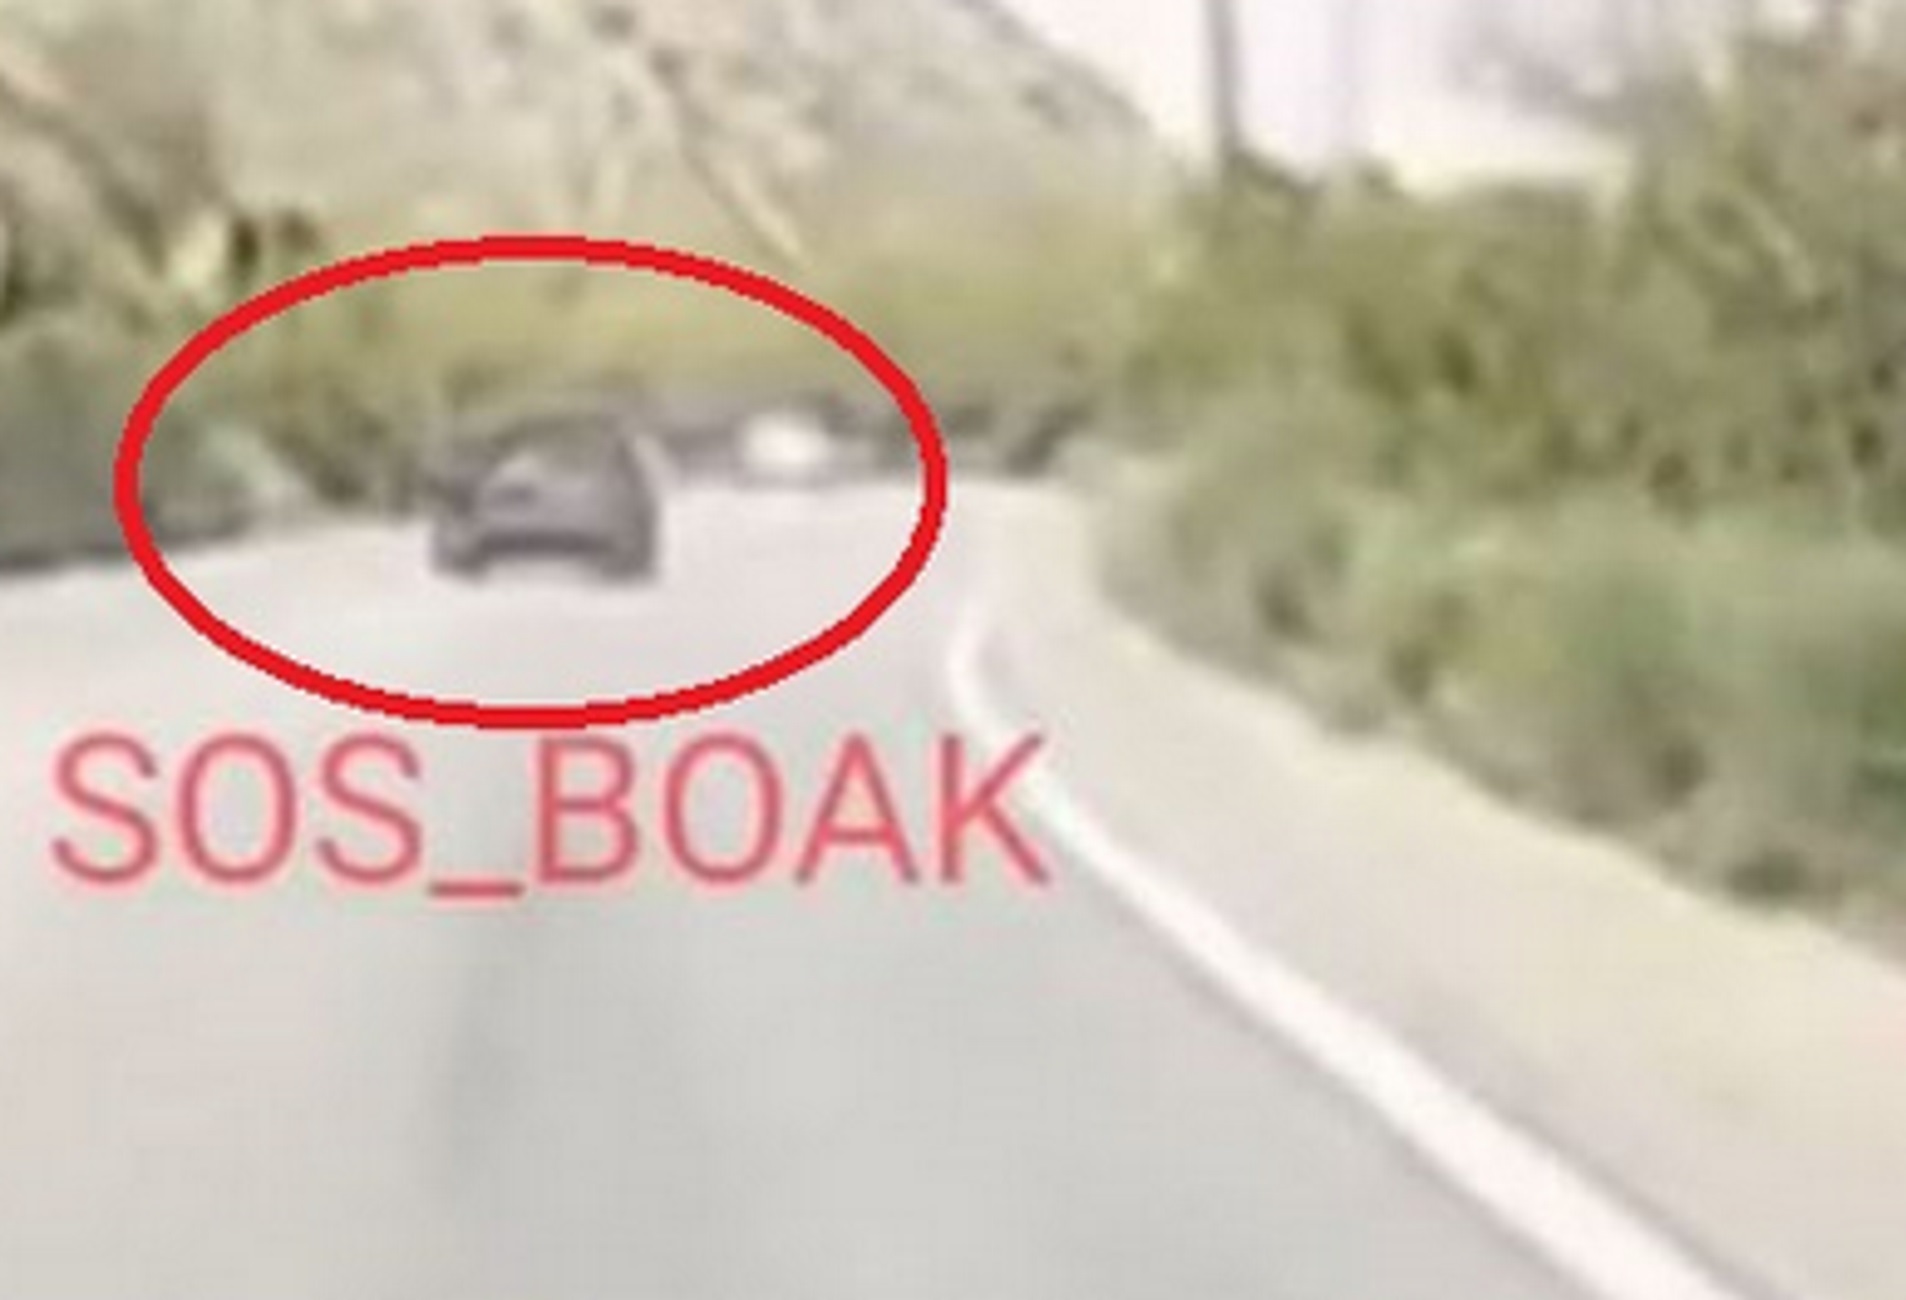 ΒΟΑΚ: Τροχαίο στην κάμερα με αυτοκίνητο να συγκρούεται με φορτηγό